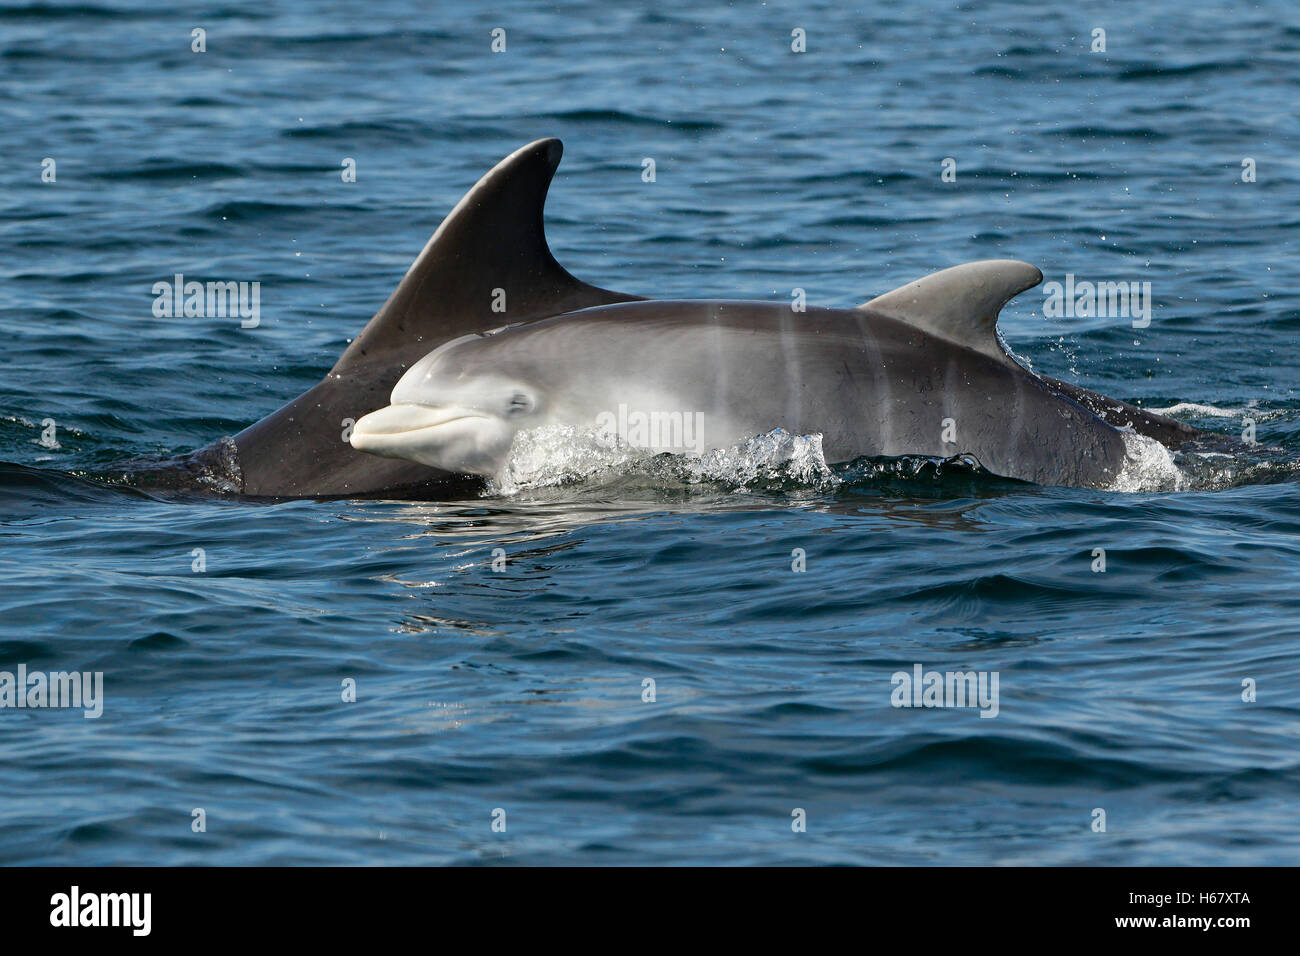 Neben seiner Mutter, Moray Firth, Schottland, taucht ein Baby aus dem Bottlenose-Delphin auf, um zu atmen. Der junge Delphin hat vertikale fötale Faltenstreifen am Körper. Stockfoto